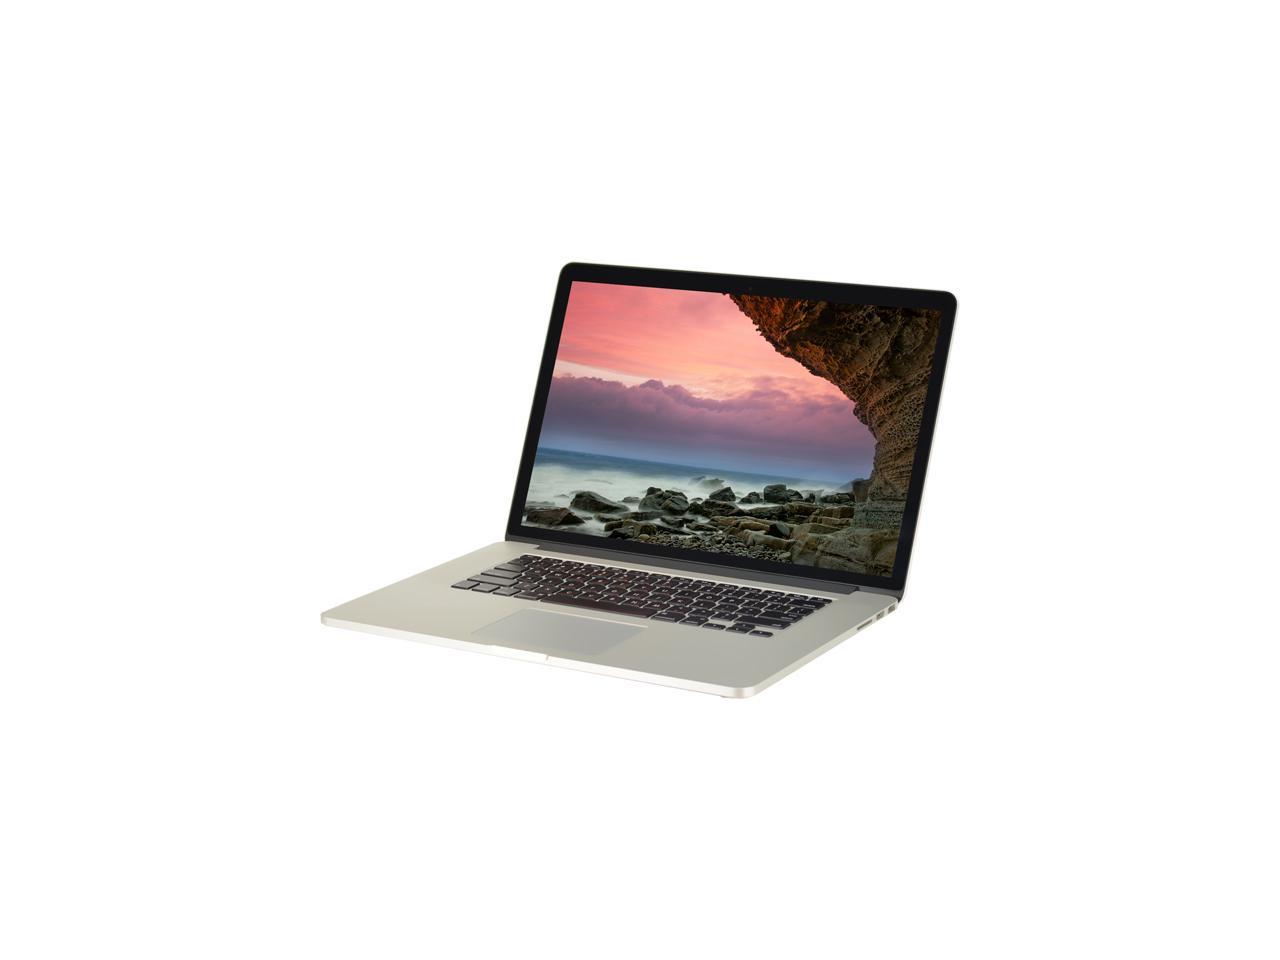 macbook pro a1398 refurbished